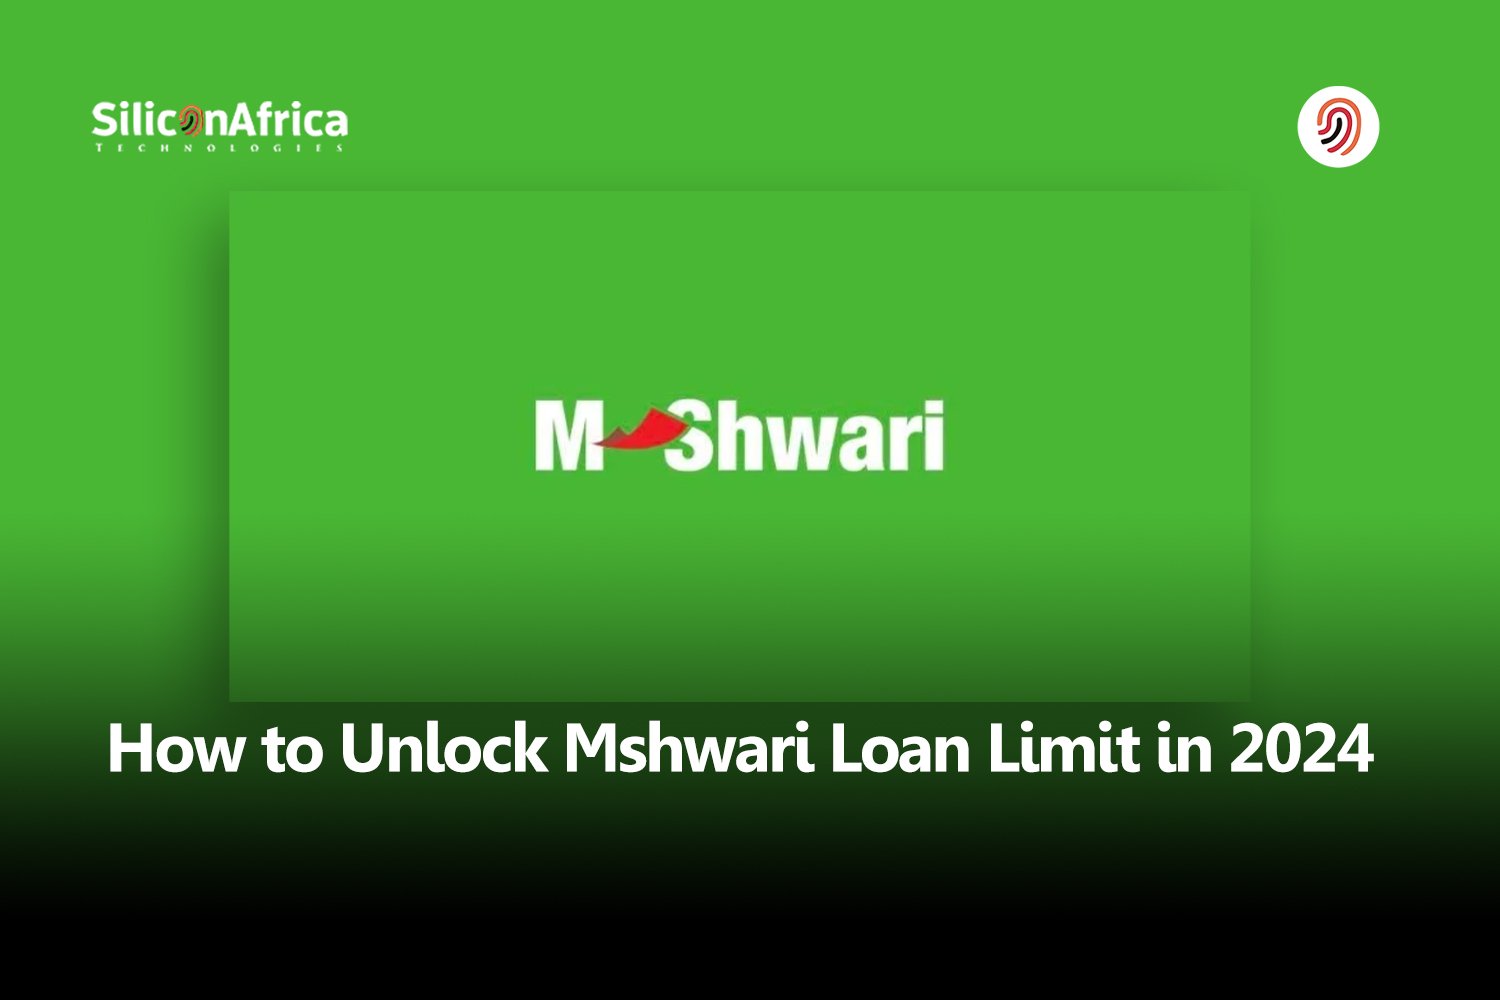 mshwari loan limit